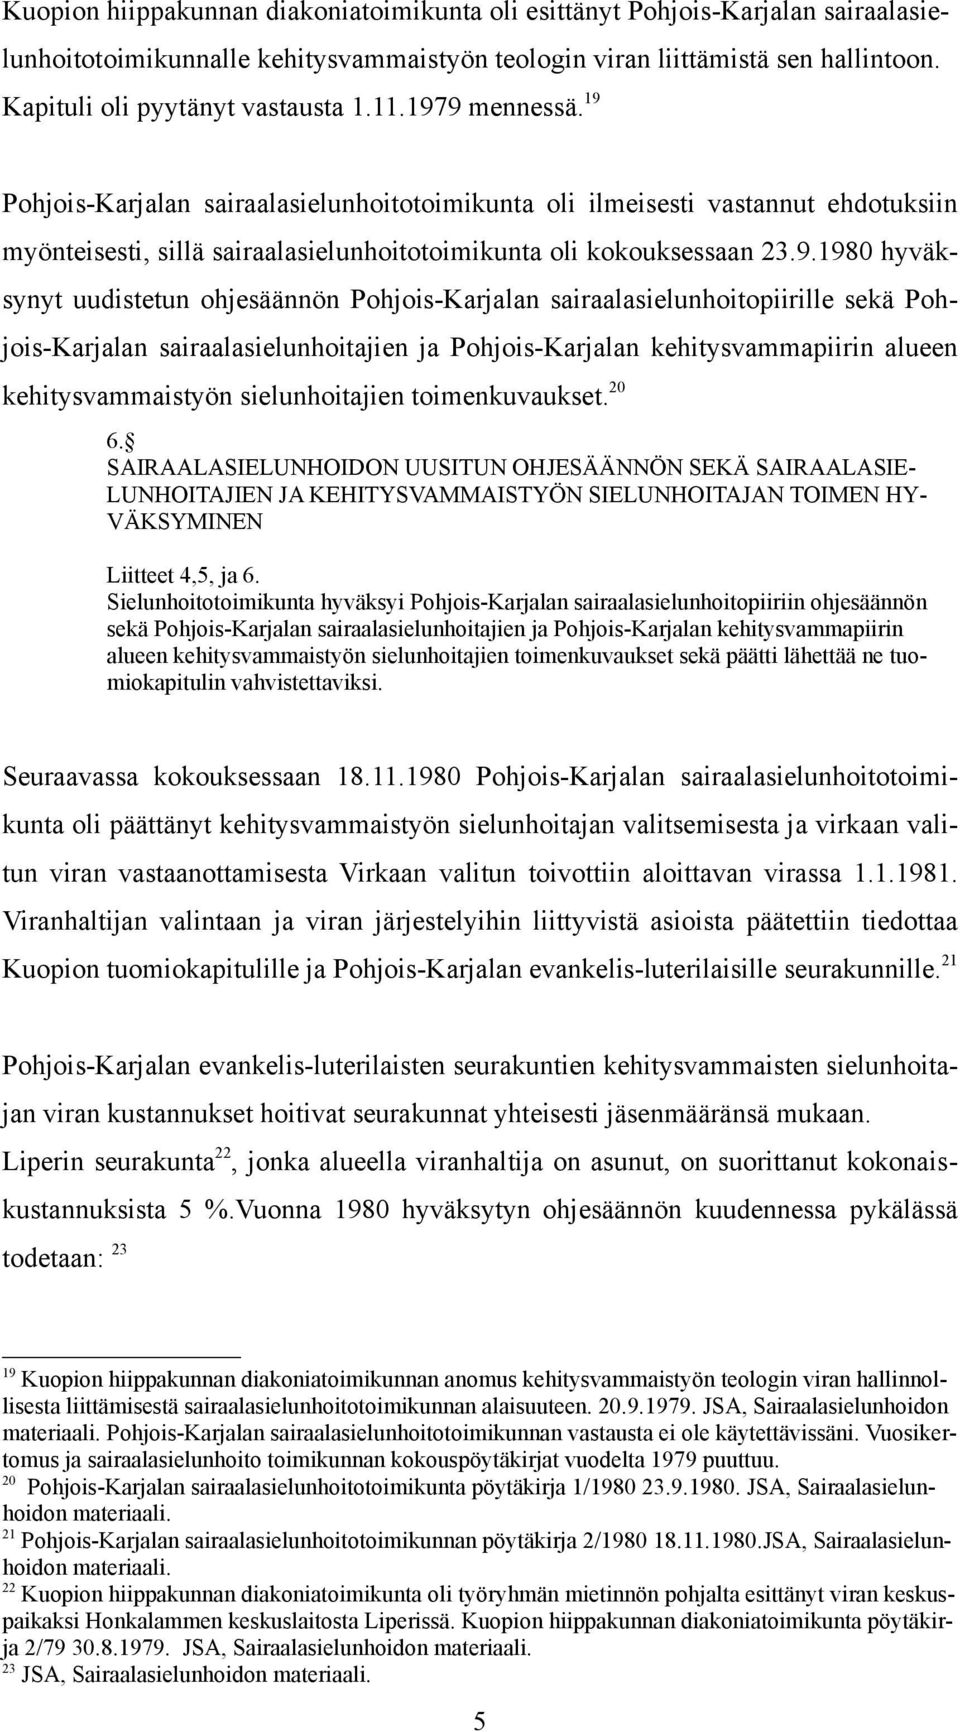 9 mennessä. 19 Pohjois-Karjalan sairaalasielunhoitotoimikunta oli ilmeisesti vastannut ehdotuksiin myönteisesti, sillä sairaalasielunhoitotoimikunta oli kokouksessaan 23.9.1980 hyväksynyt uudistetun